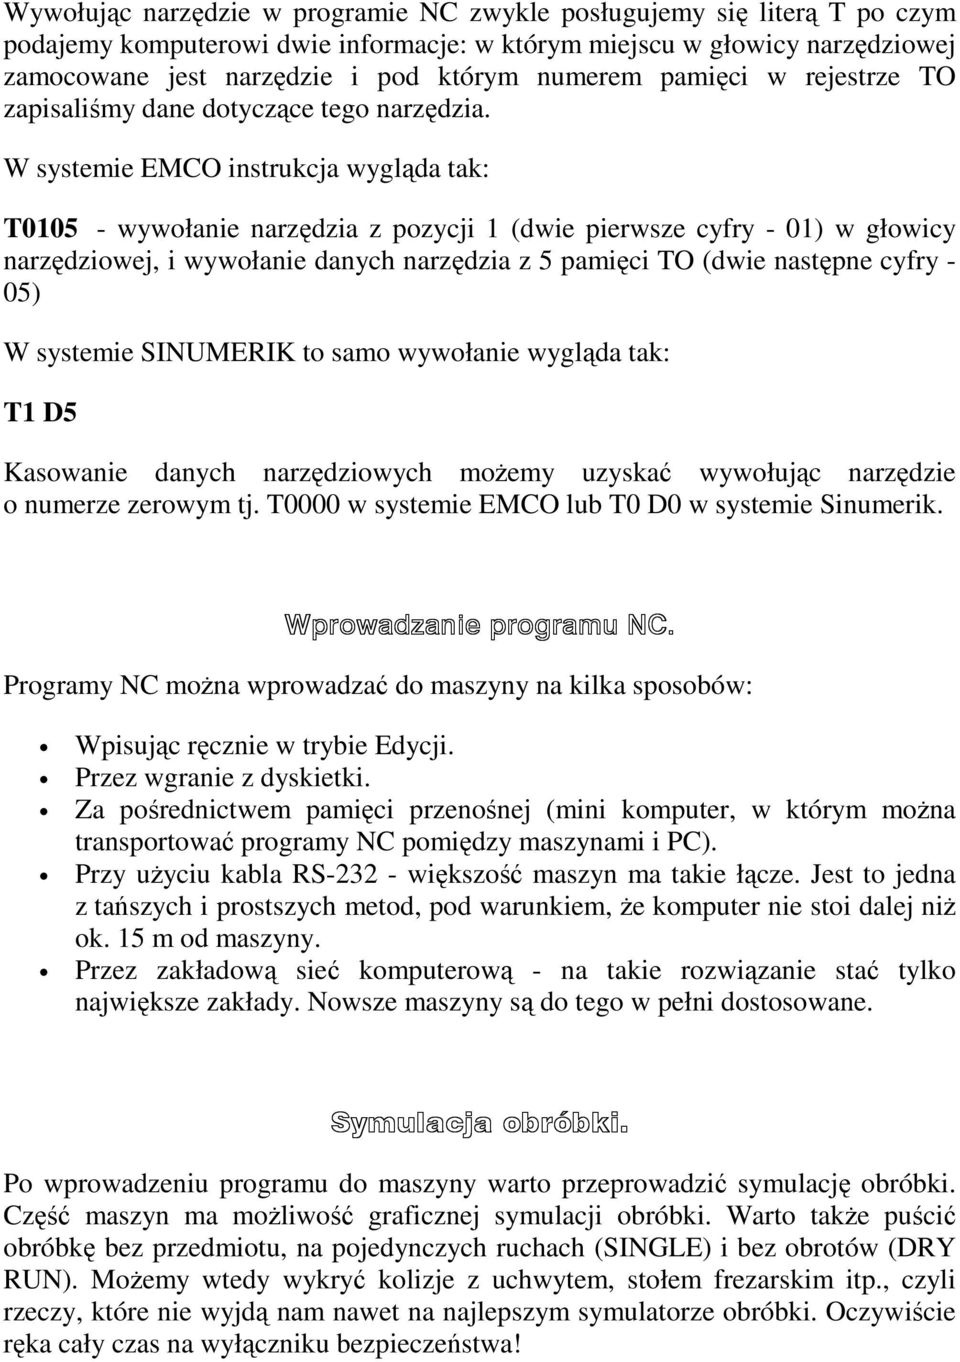 W systemie EMCO instrukcja wygląda tak: T0105 - wywołanie narzędzia z pozycji 1 (dwie pierwsze cyfry - 01) w głowicy narzędziowej, i wywołanie danych narzędzia z 5 pamięci TO (dwie następne cyfry -